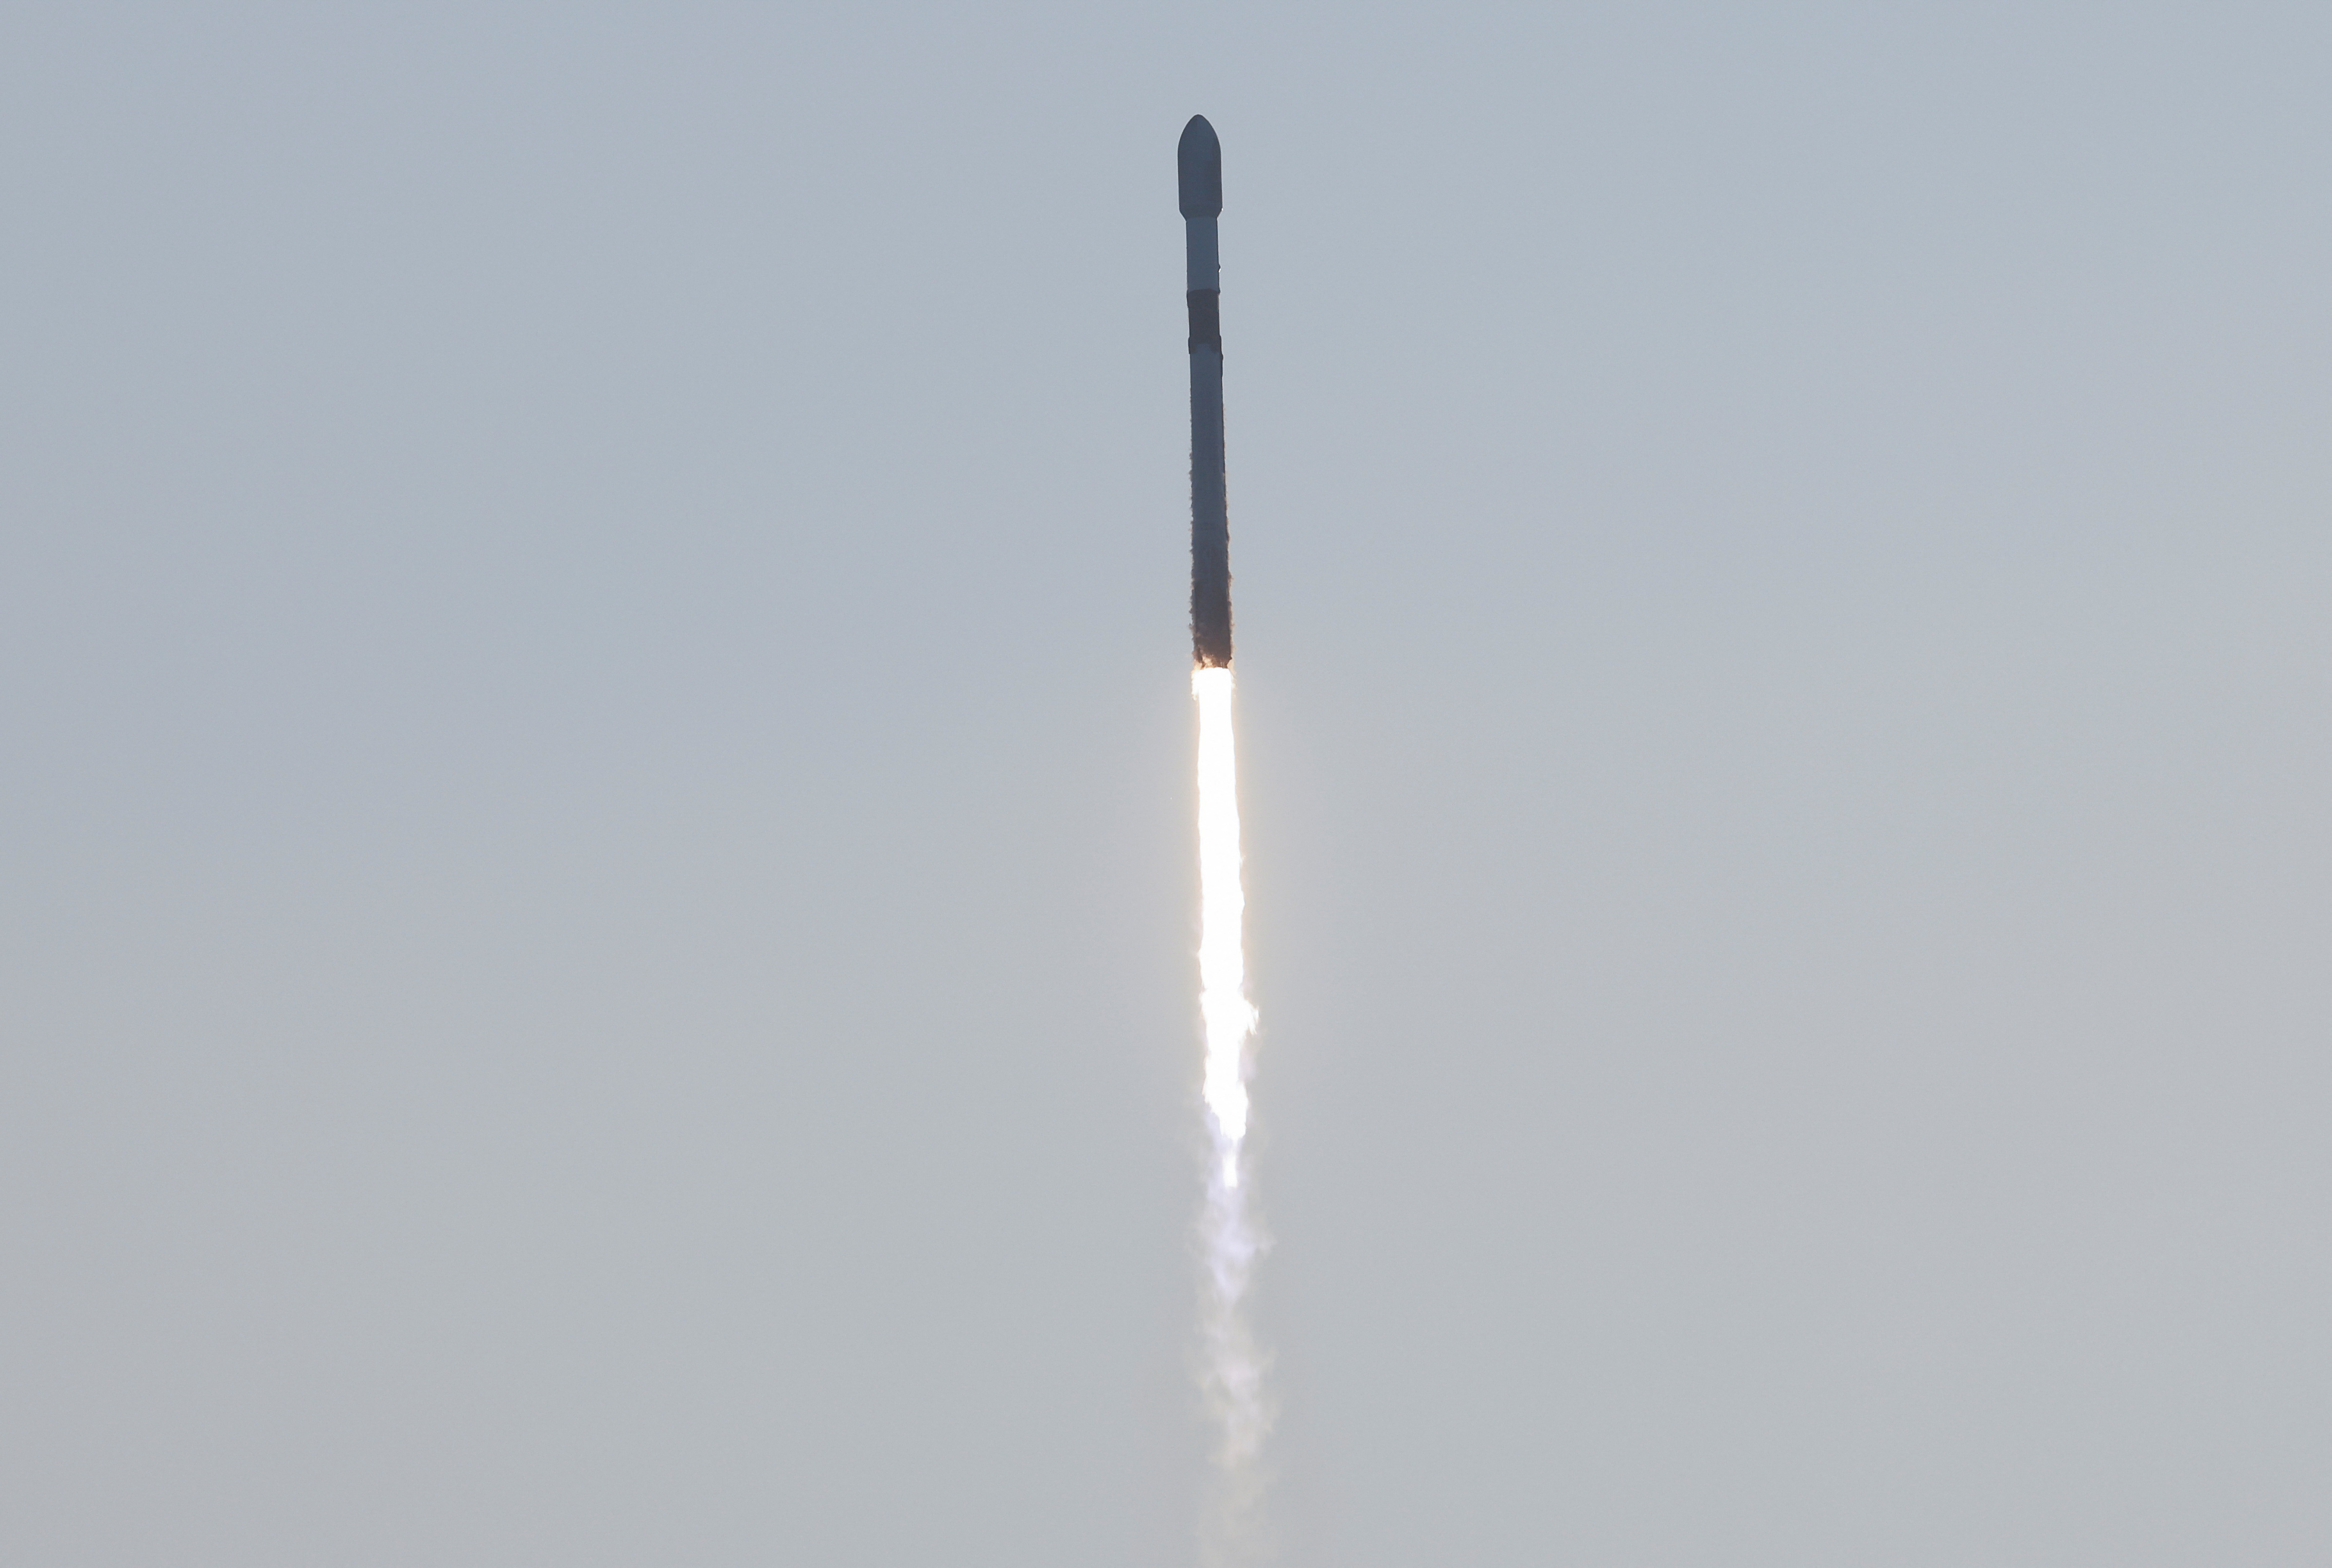 Elon Musk tweets using SpaceX's Starlink satellite internet